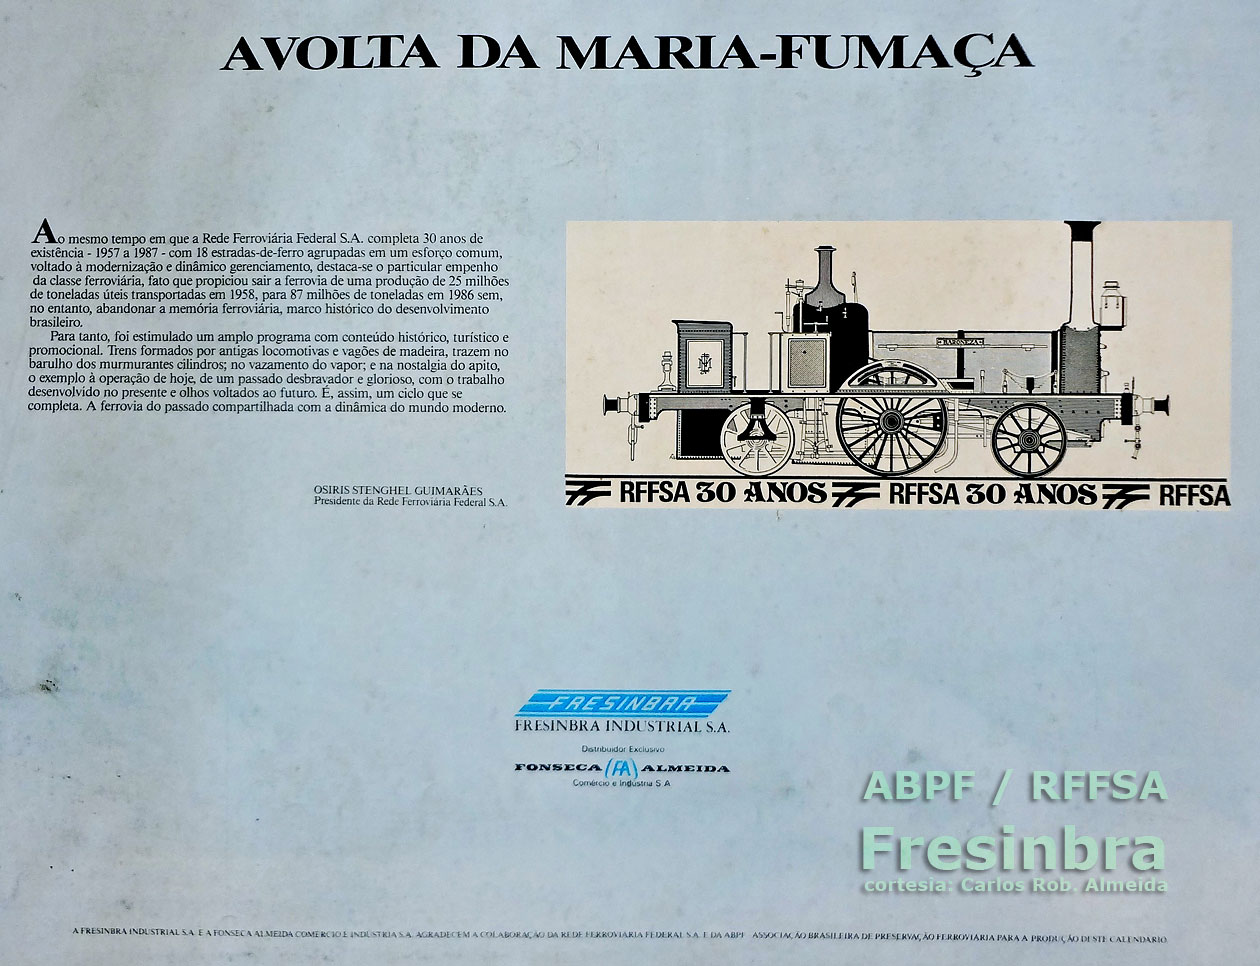 A volta da Maria-Fumaça: apresentação dos trens turísticos pelo presidente da RFFSA, no Calendário Fresinbra 1987